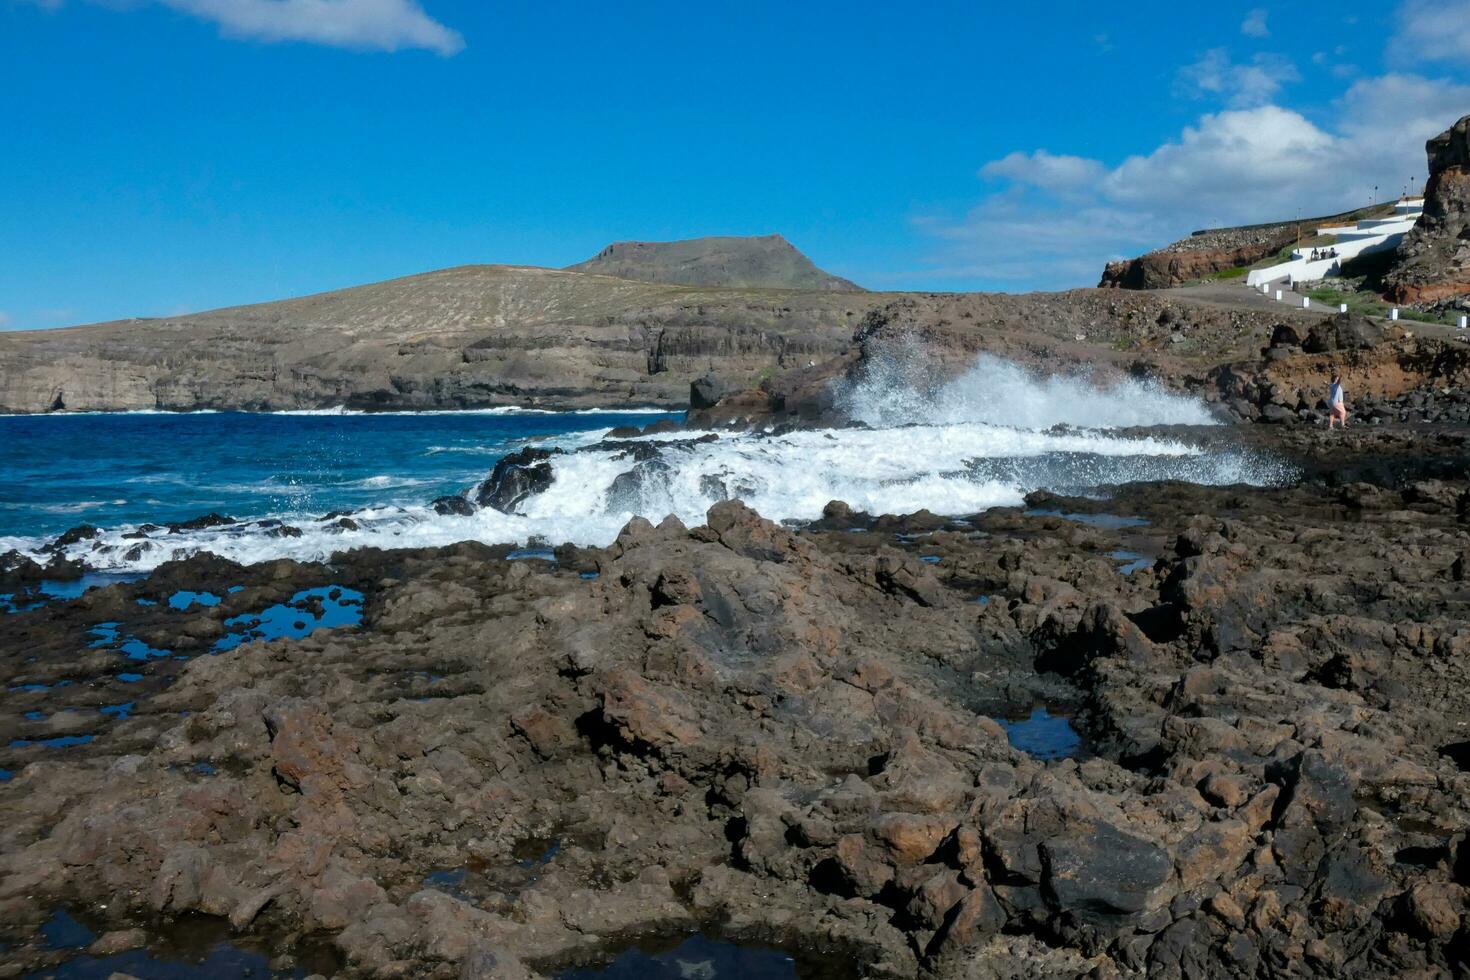 ampla ondas falhando contra a pedras dentro a oceano foto